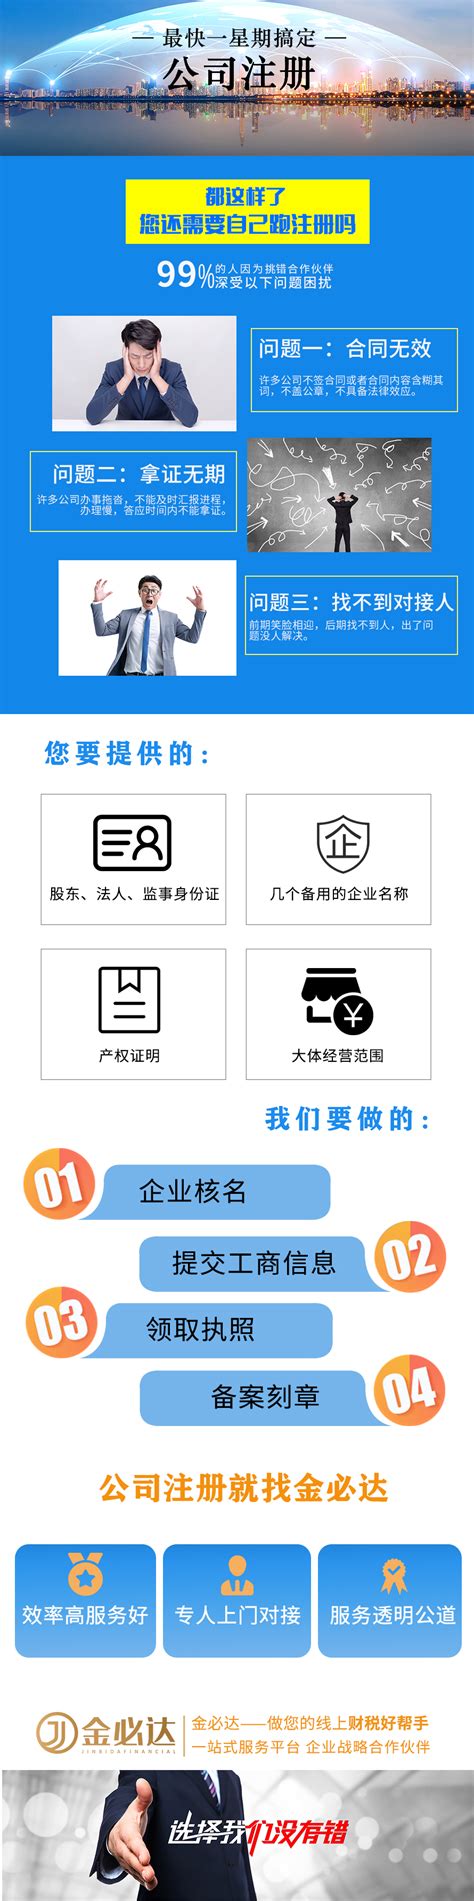 北京注册商标_官费及服务费详情_企业服务汇